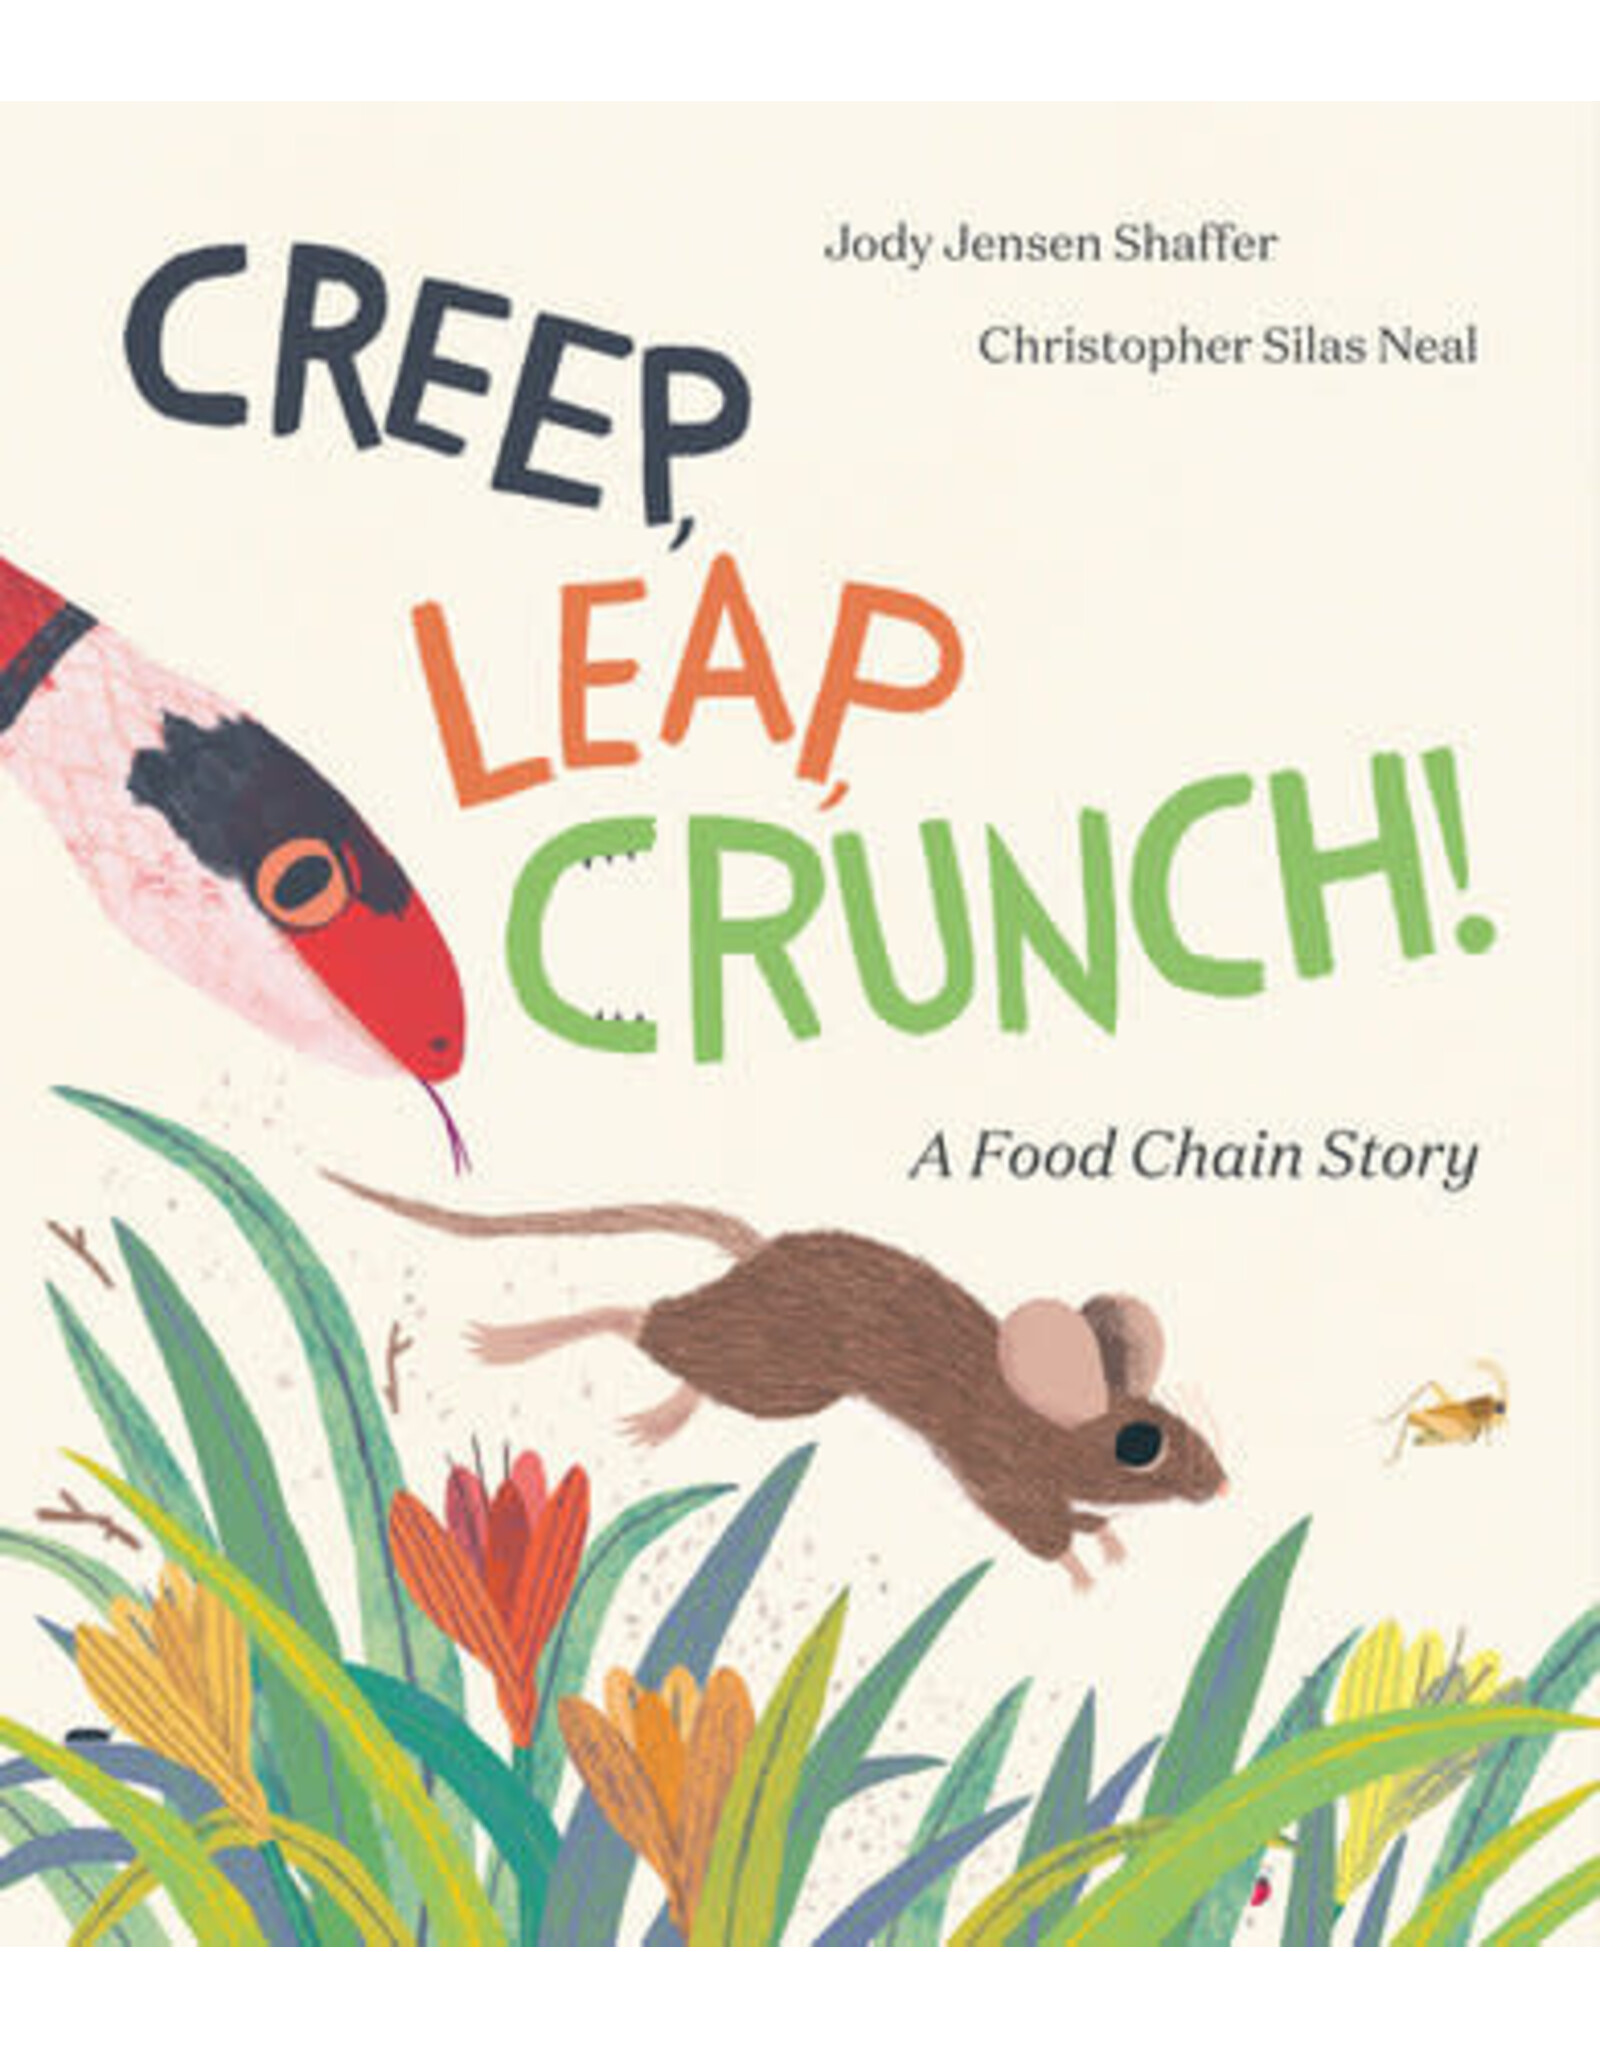 Creep, Leap, Crunch!